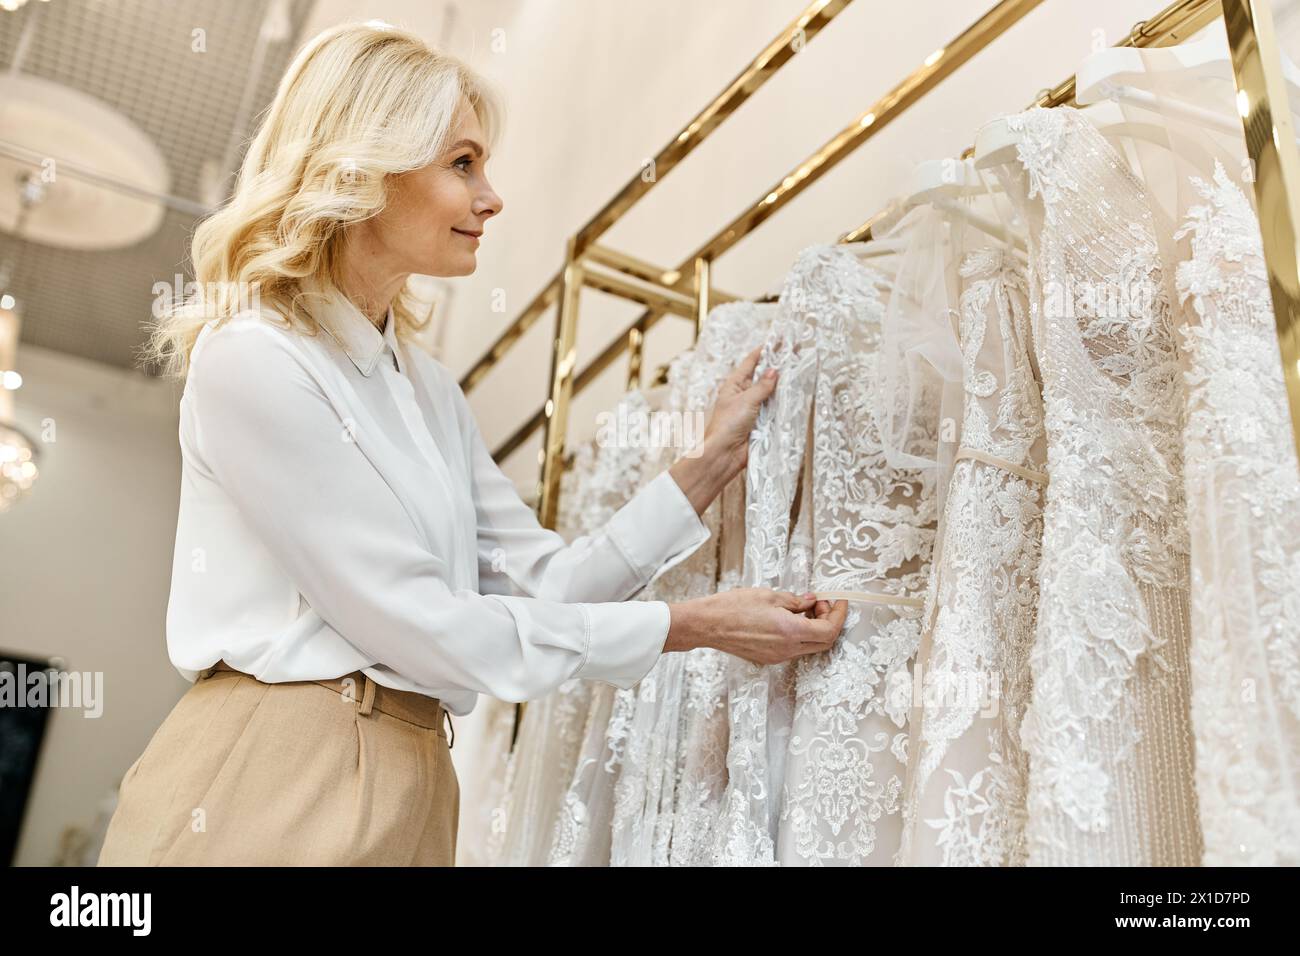 Ein hübscher Einkaufsassistent mittleren Alters hilft einer Frau, die Brautkleider auf einem Regal in einem Brautsalon durchzustöbern. Stockfoto